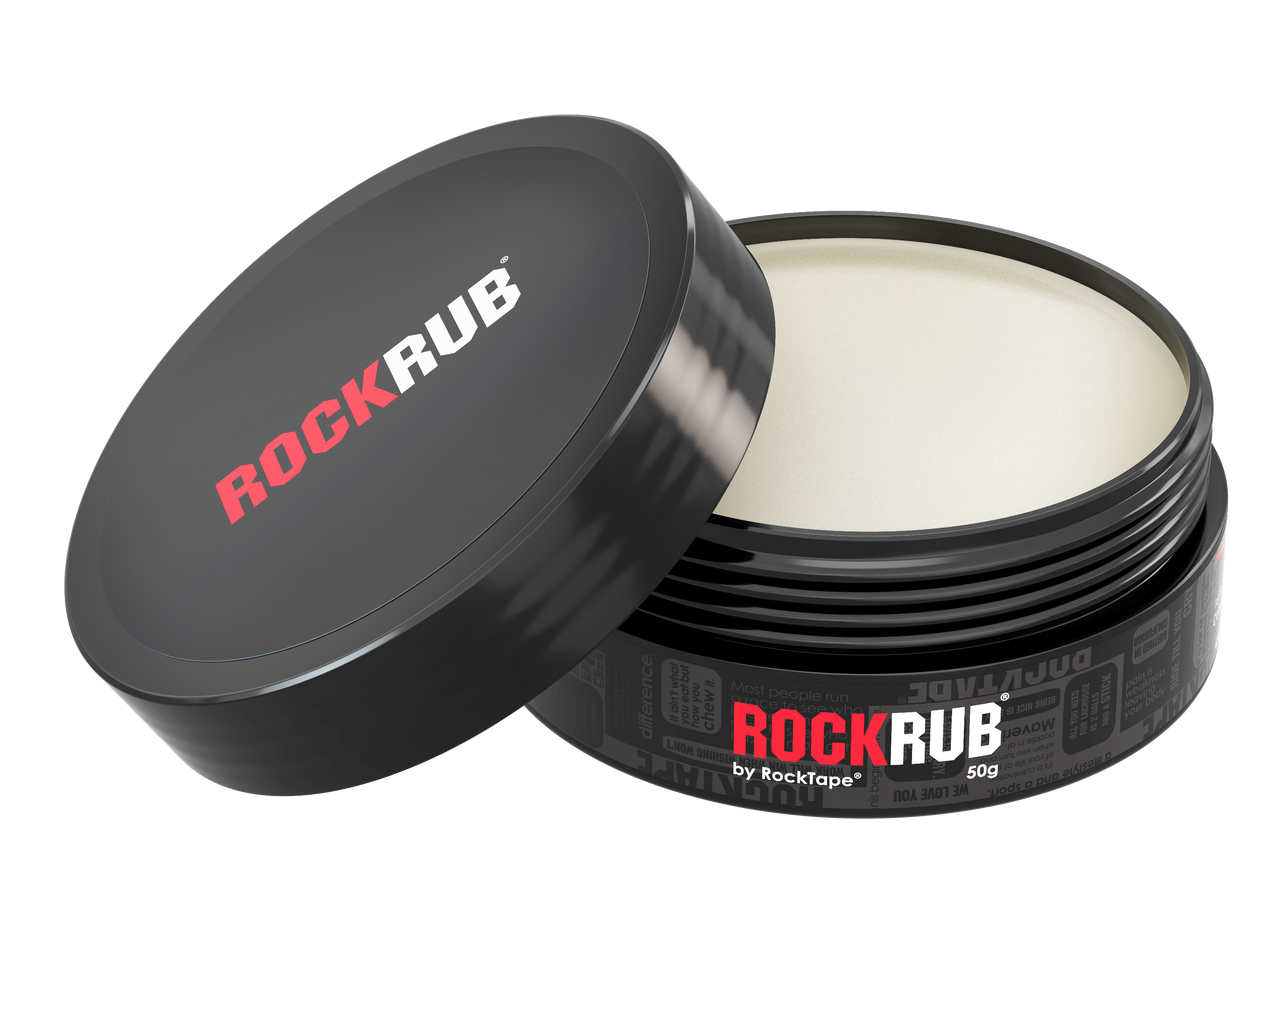 Rocktape RockRub 50 جرام (غير معطر)، زيت الشمع للعلاج الطبيعي